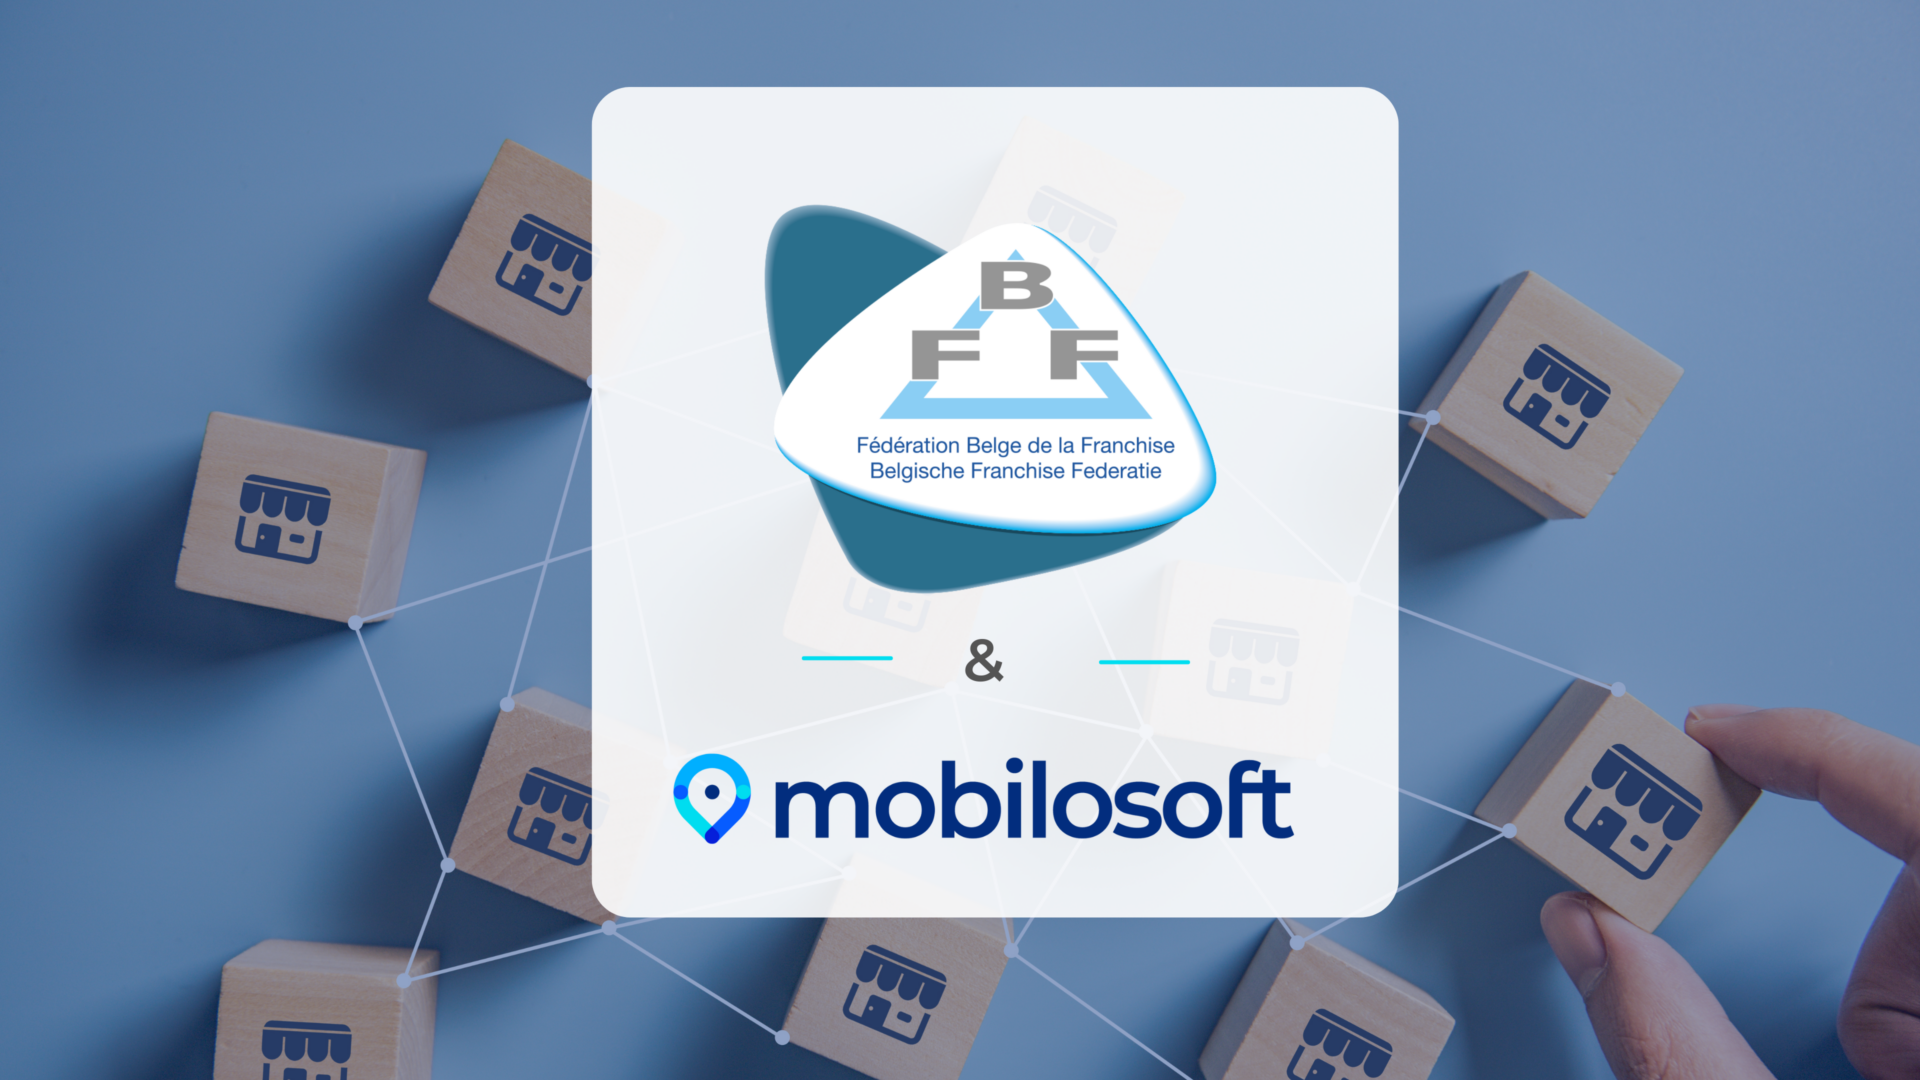 Mobilosoft devient membre associé de la fédération belge de la franchise